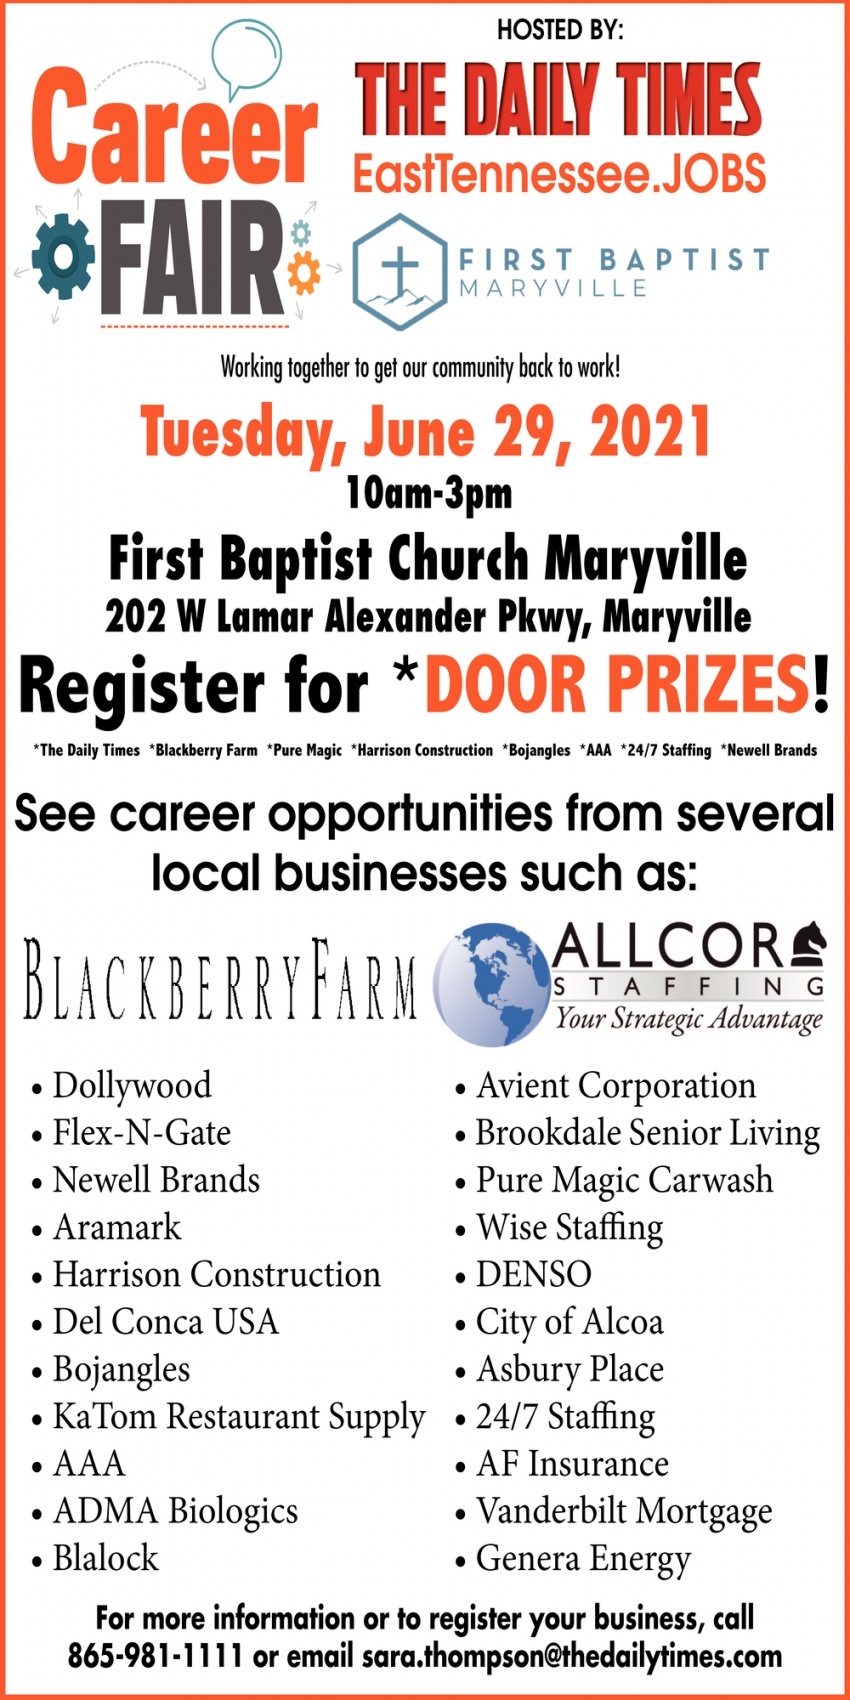 Career Fair, Career Fair at First Baptist Church Maryville